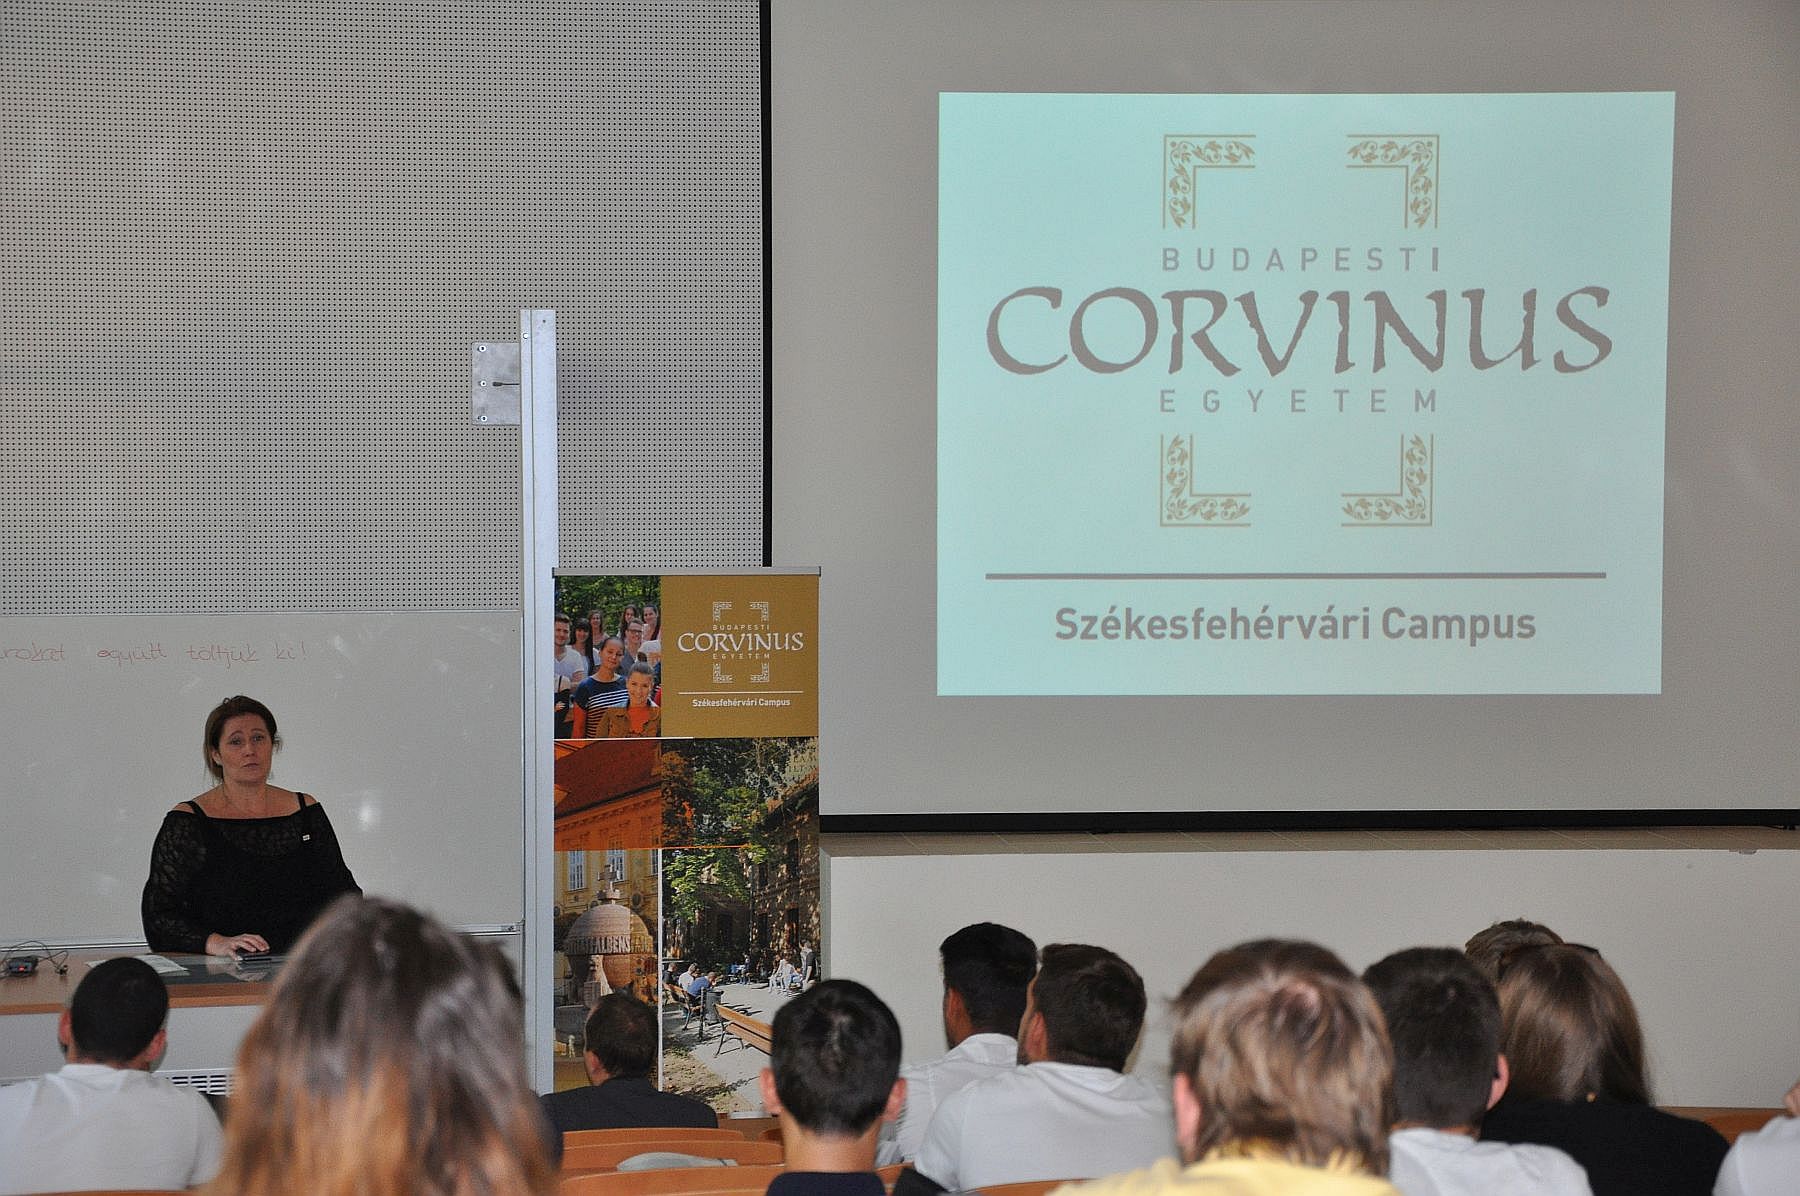 Beiratkoztak a Corvinus Egyetem Székesfehérvári Campusának elsőéves hallgatói